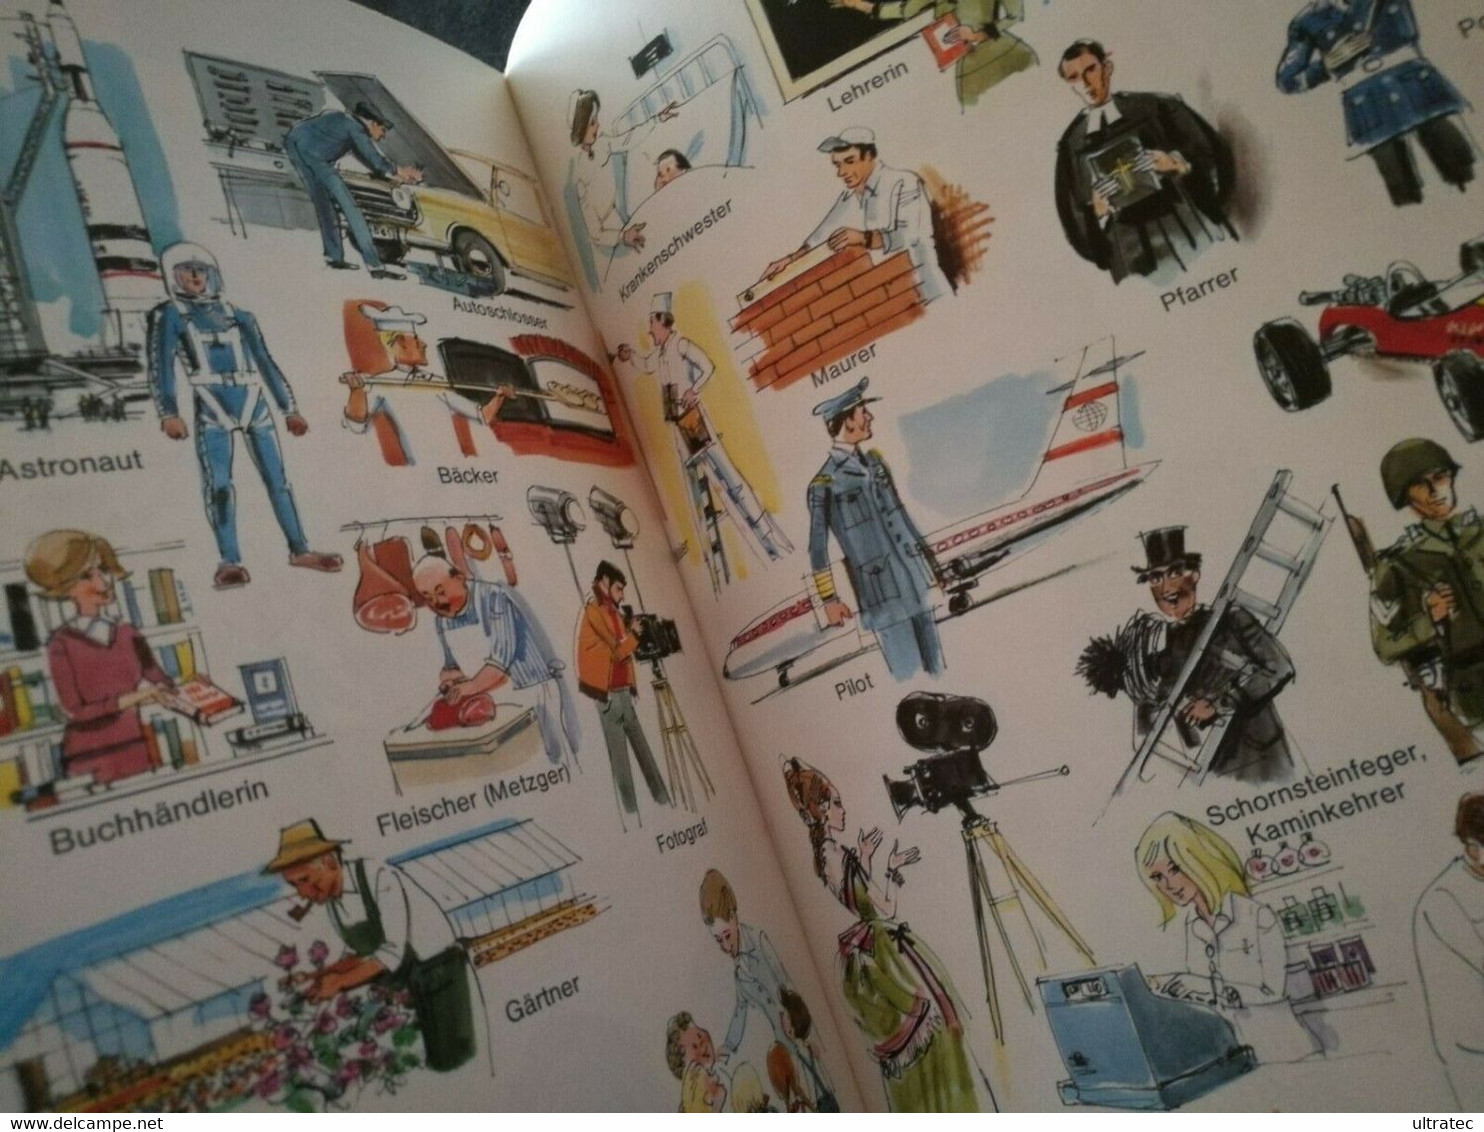 «Mein Buntes Bilderwörterbuch» Von Horst Lemke 70er Jahre Antikes Kinderbuch - Avontuur